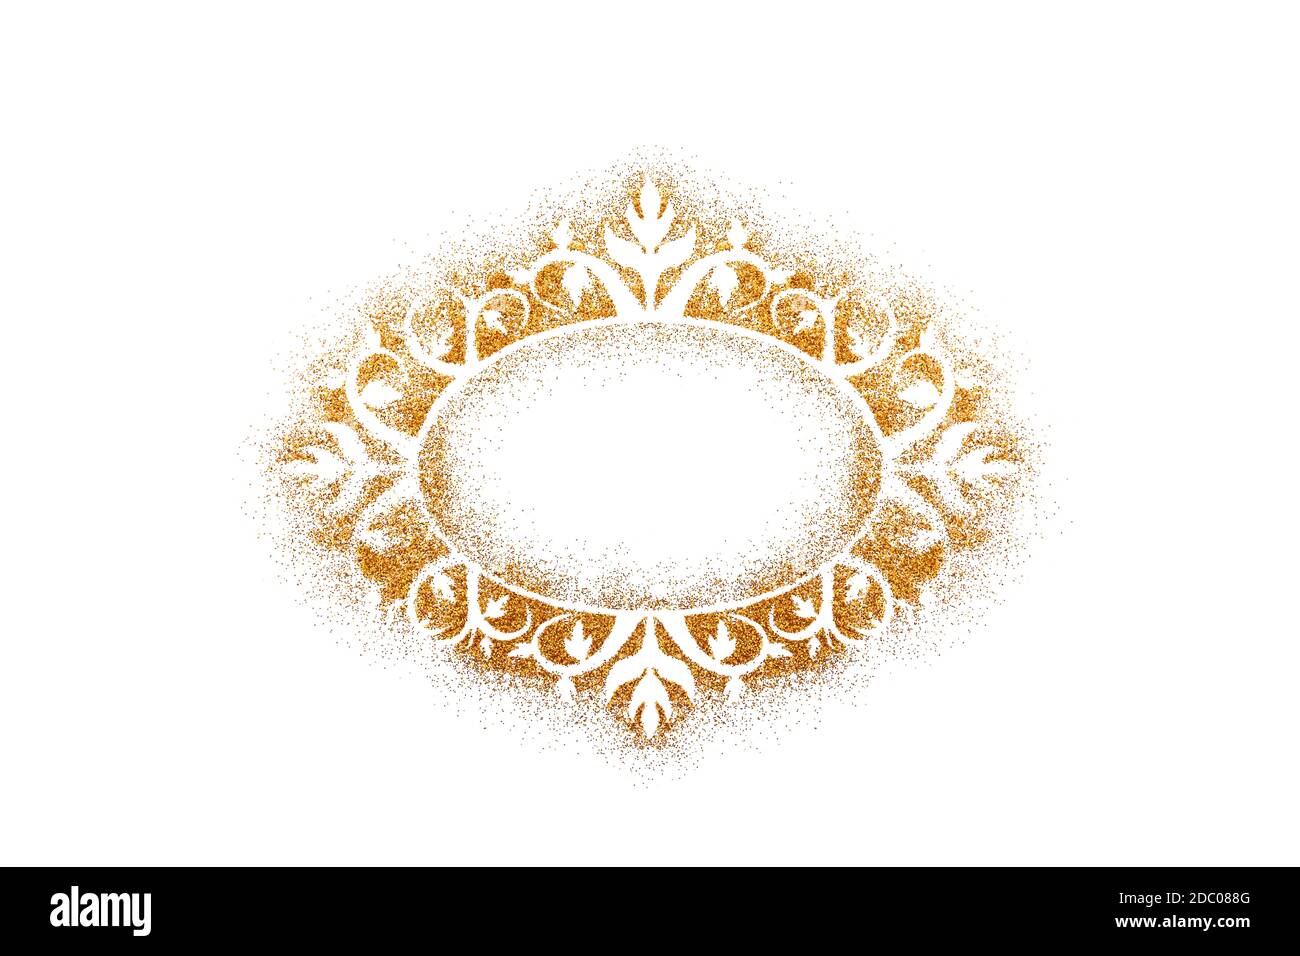 Ornato cornice vintage su glitter dorato isolato su sfondo bianco Foto Stock